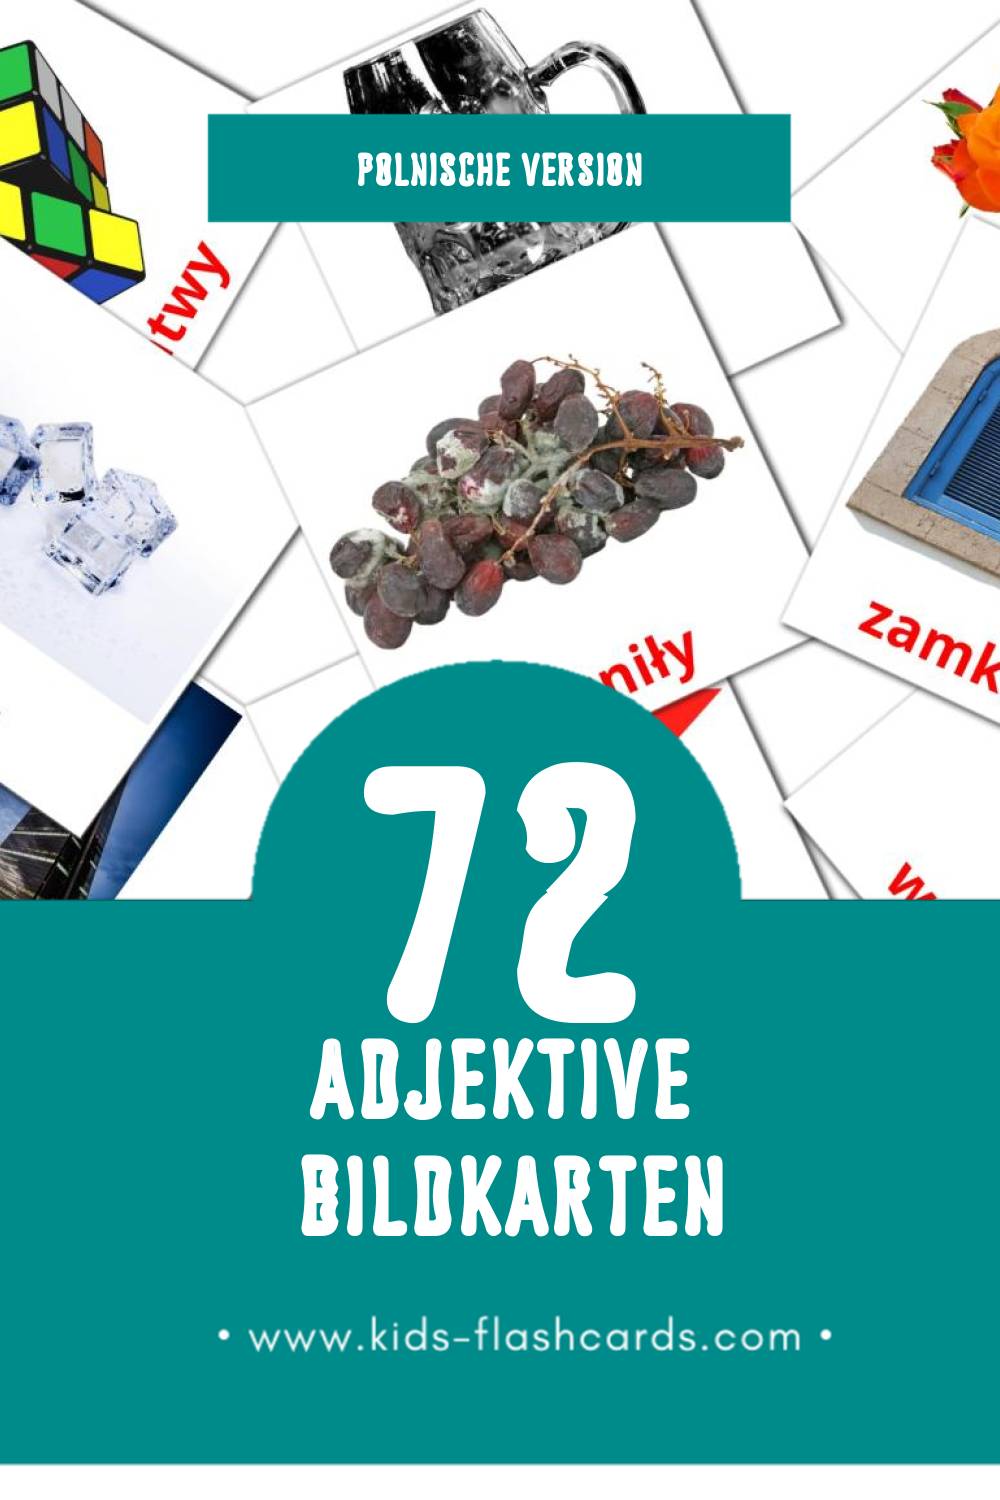 Visual Przymiotniki Flashcards für Kleinkinder (72 Karten in Polnisch)